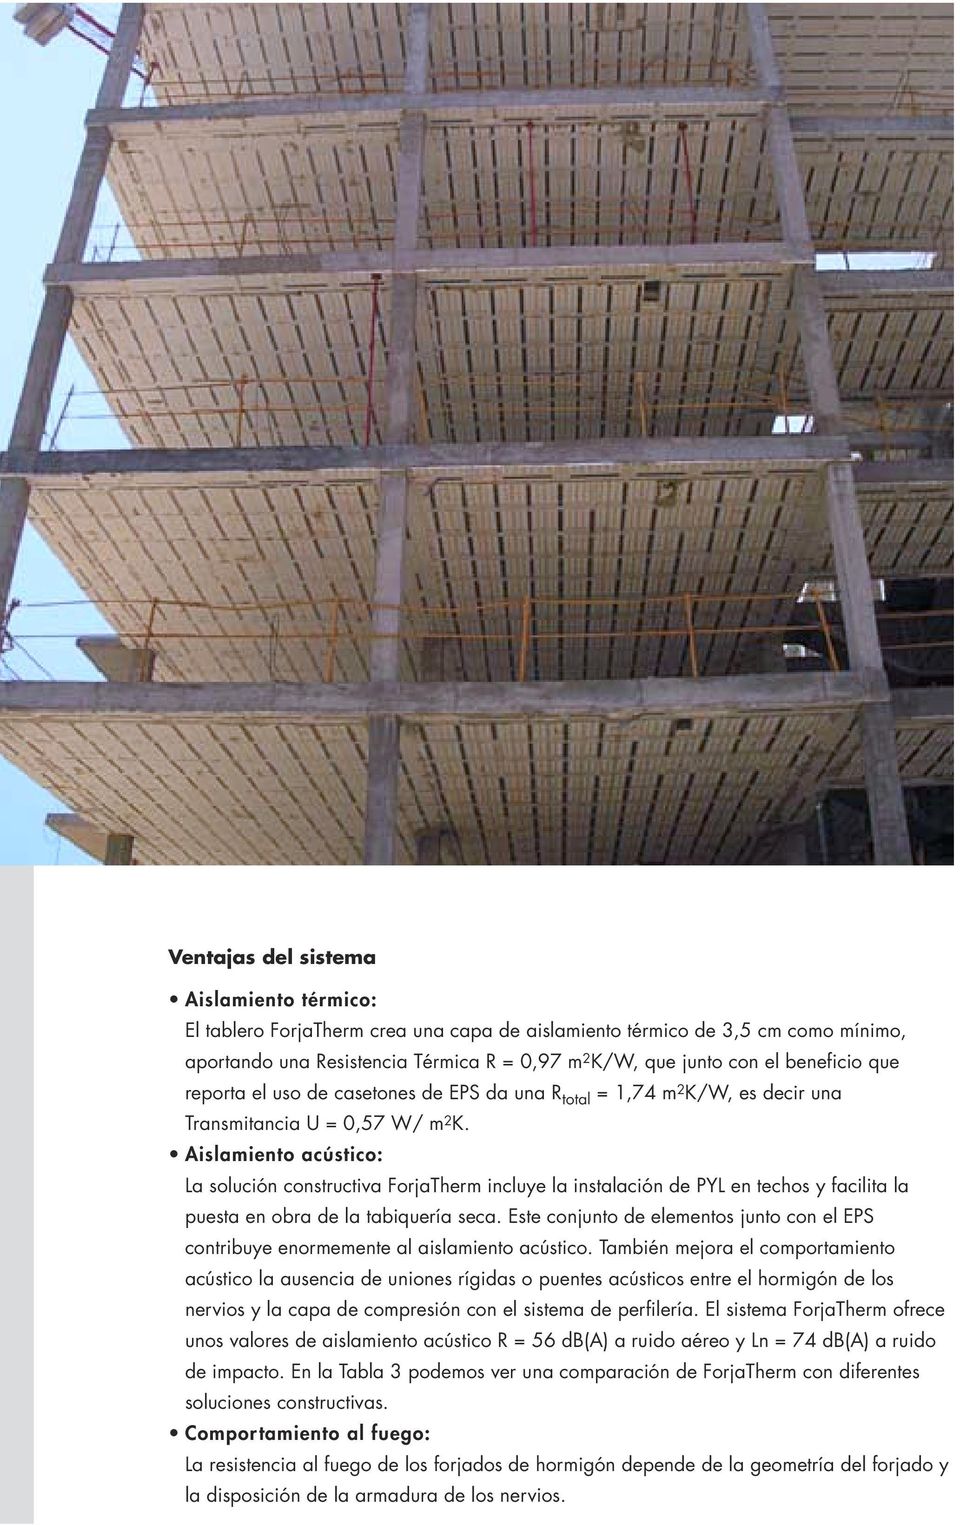 Aislamiento acústico: La solución constructiva ForjaTherm incluye la instalación de PYL en techos y facilita la puesta en obra de la tabiquería seca.